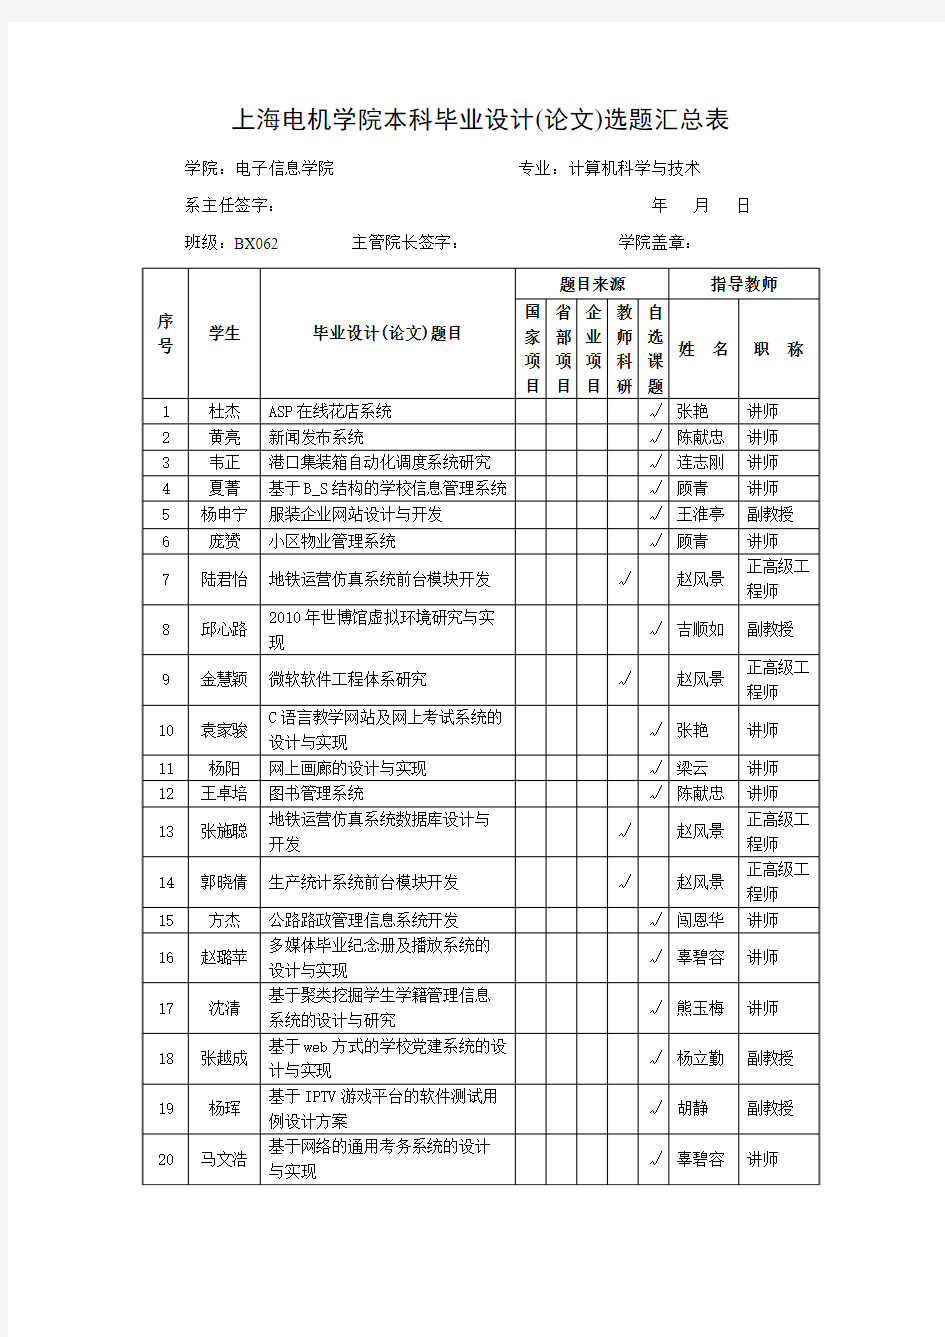 上海电机学院本科毕业设计(论文)选题汇总表